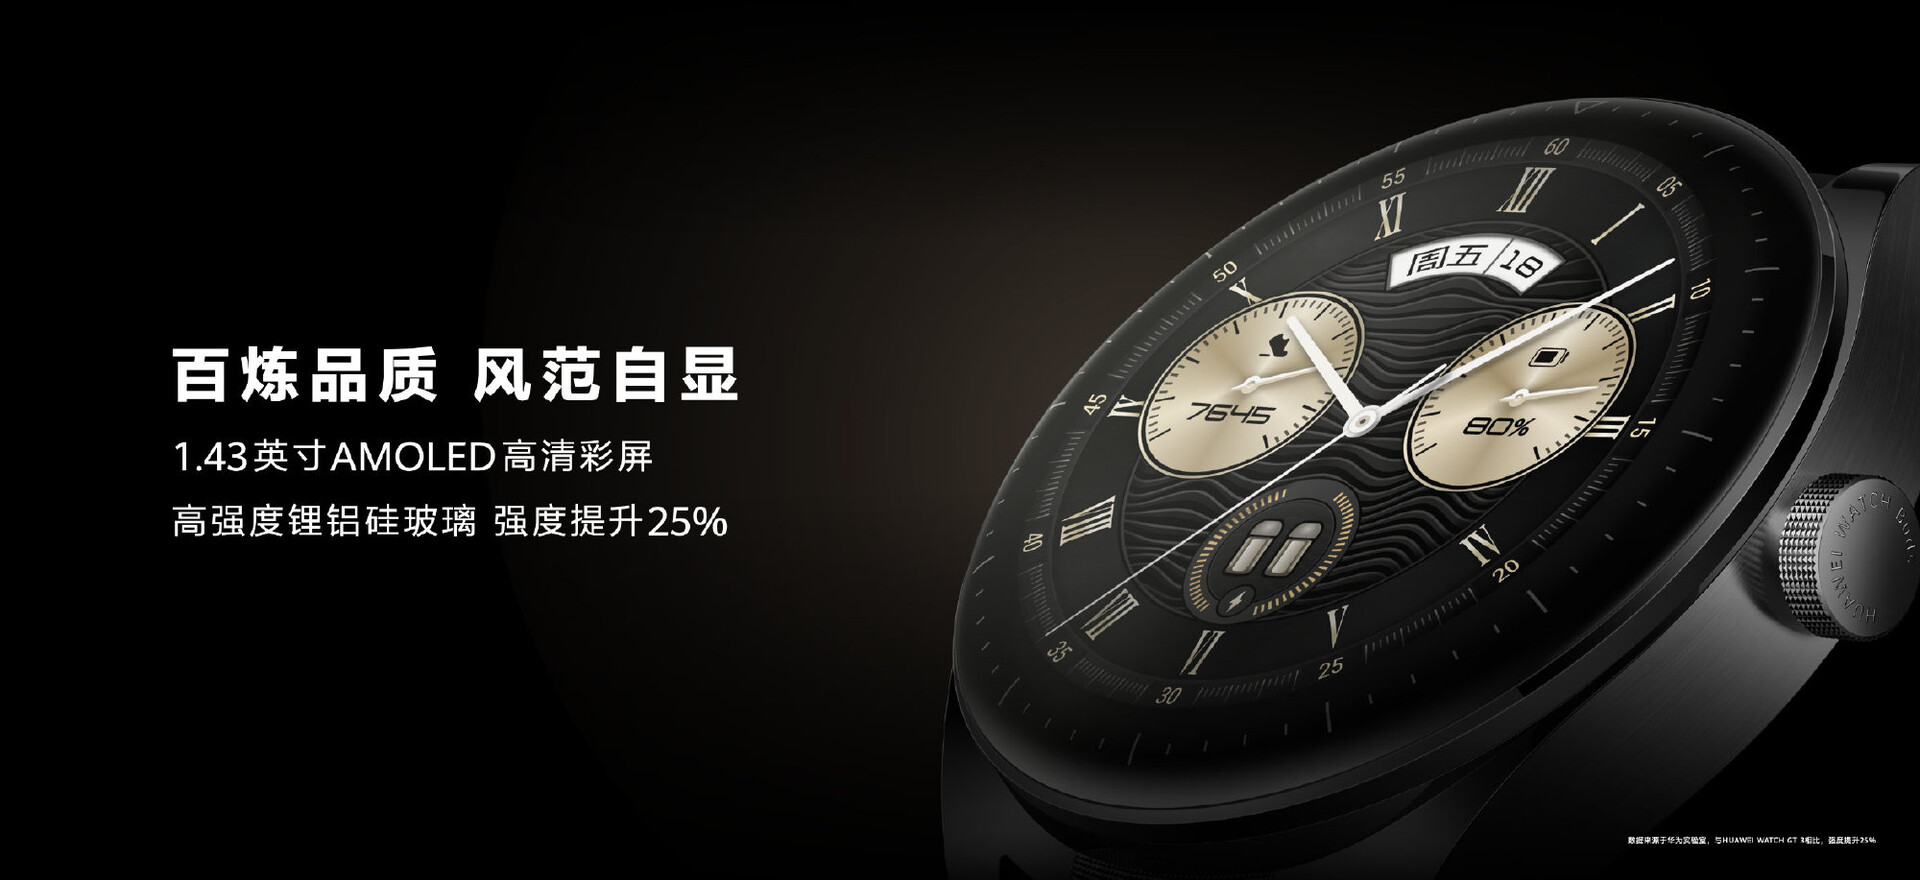 Buds vorgestellt: Ohrhörer Huawei Huawei schicker aufklappbarem verstaut News in AMOLED-Display Watch mit - Notebookcheck.com Smartwatch